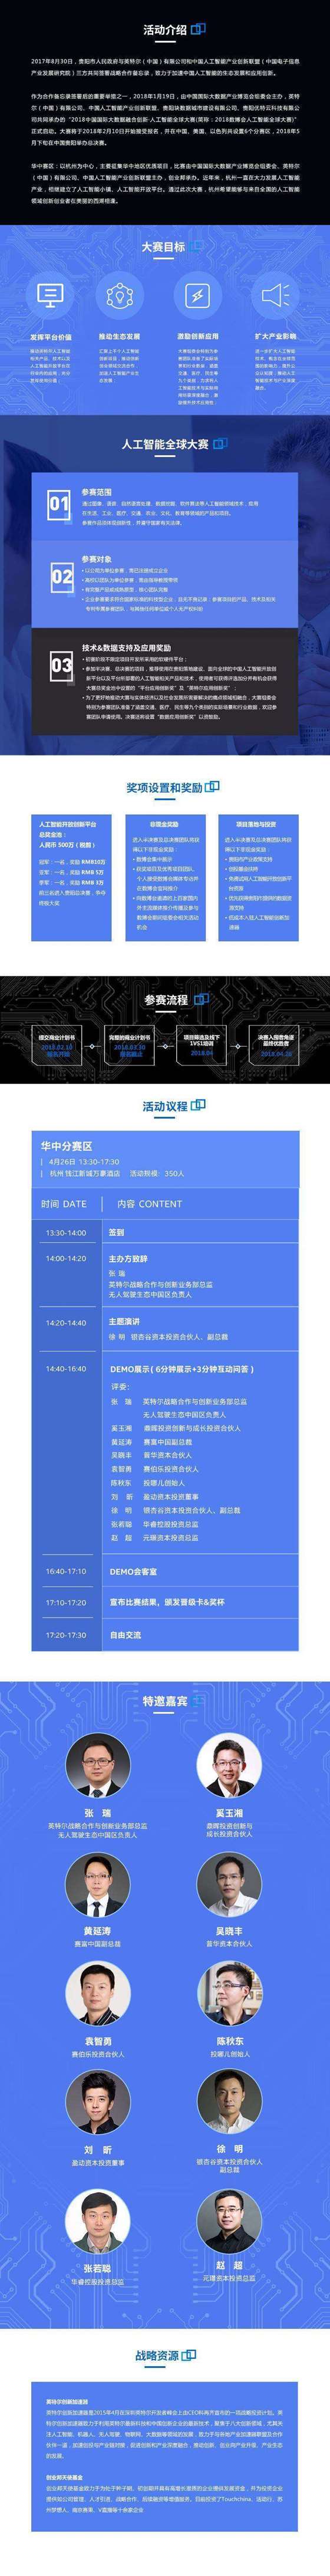 活动行-中国国际大数据融合创新·人工智能全球大赛活动行（杭州站）.jpg